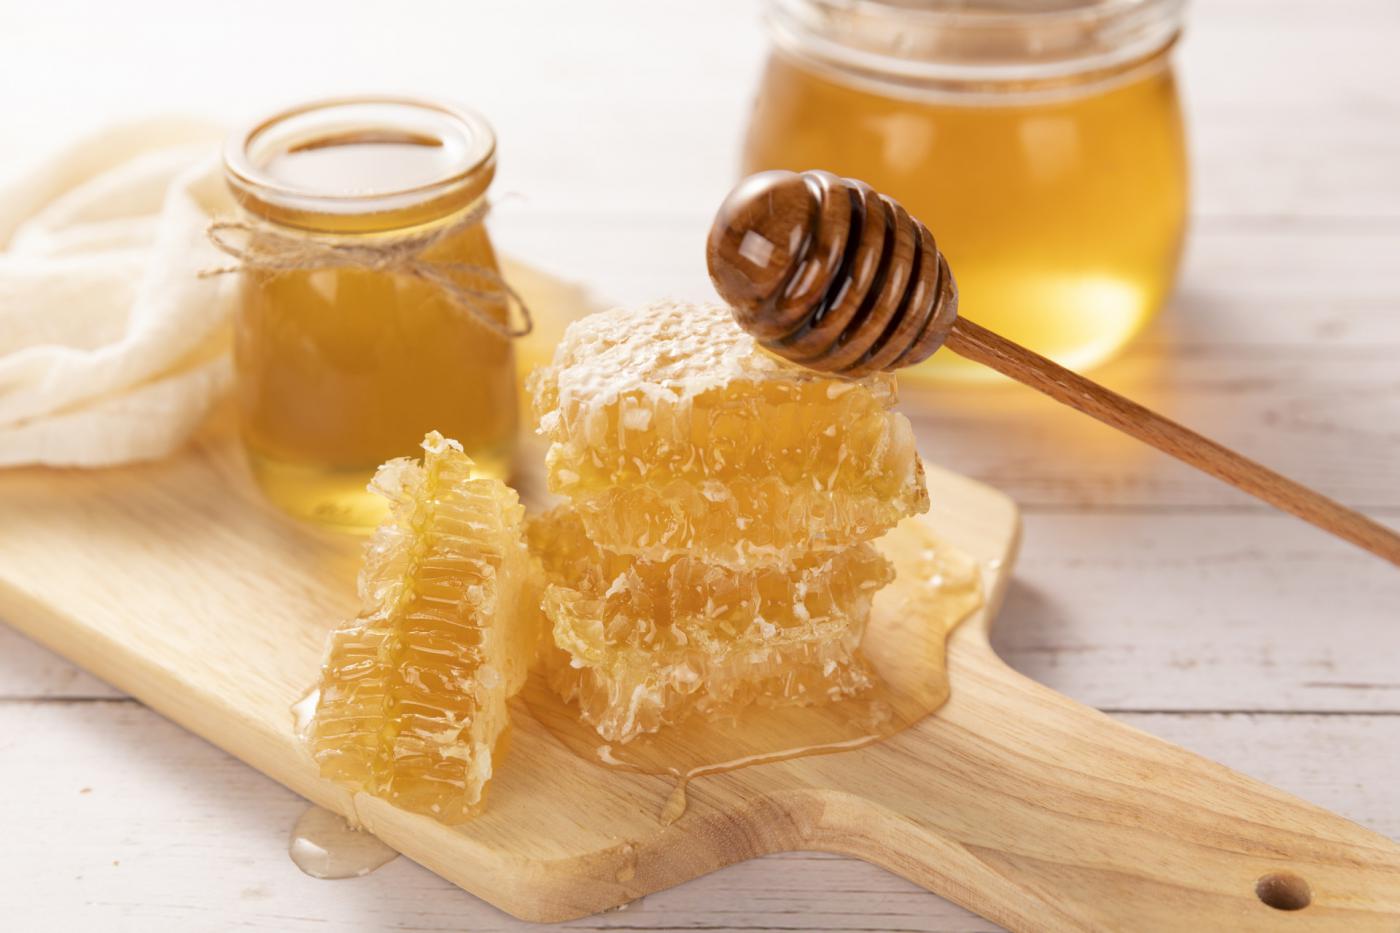 邵阳蜂蜜制品检测,蜂蜜制品检测费用,蜂蜜制品检测机构,蜂蜜制品检测项目